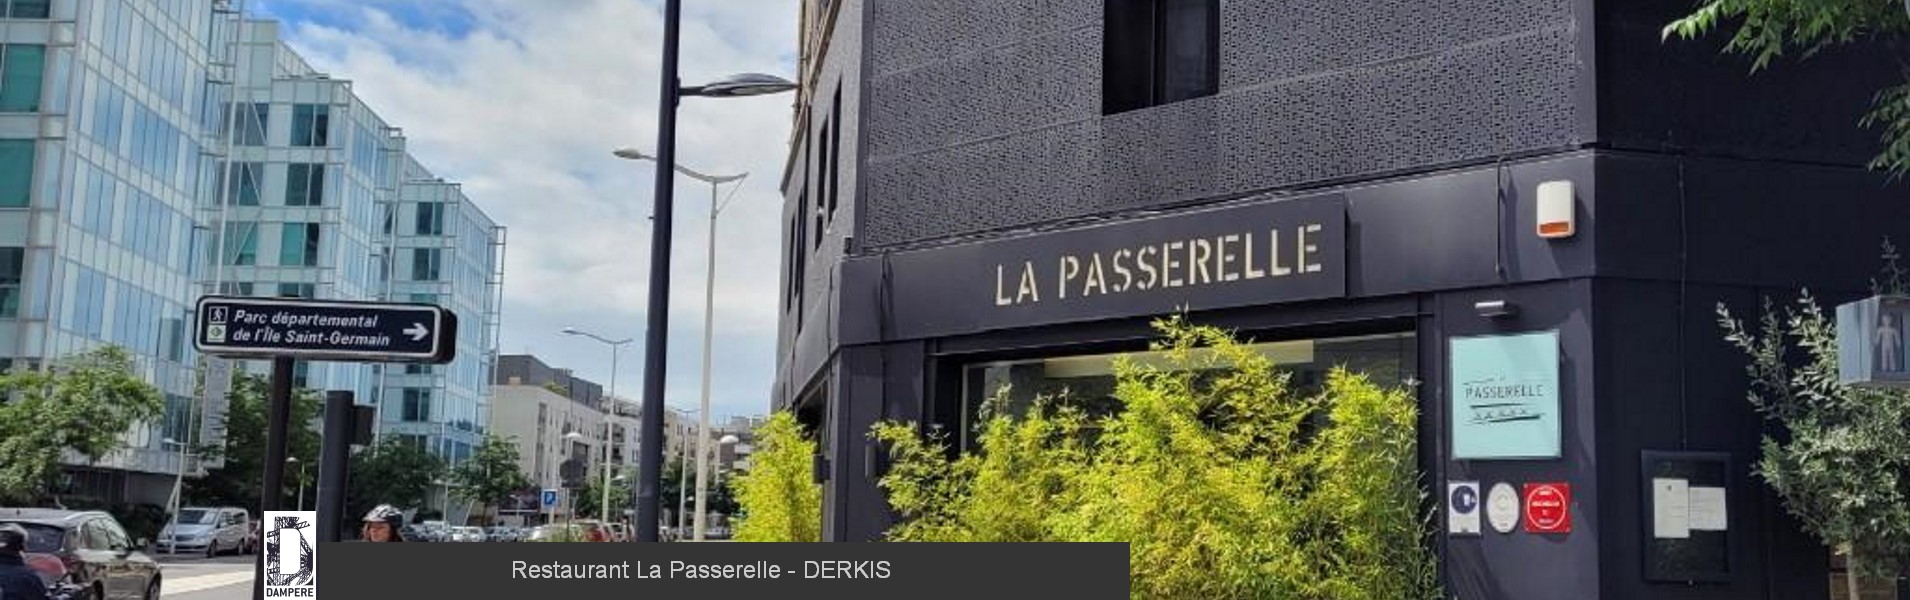 Restaurant La Passerelle DERKIS 6 1